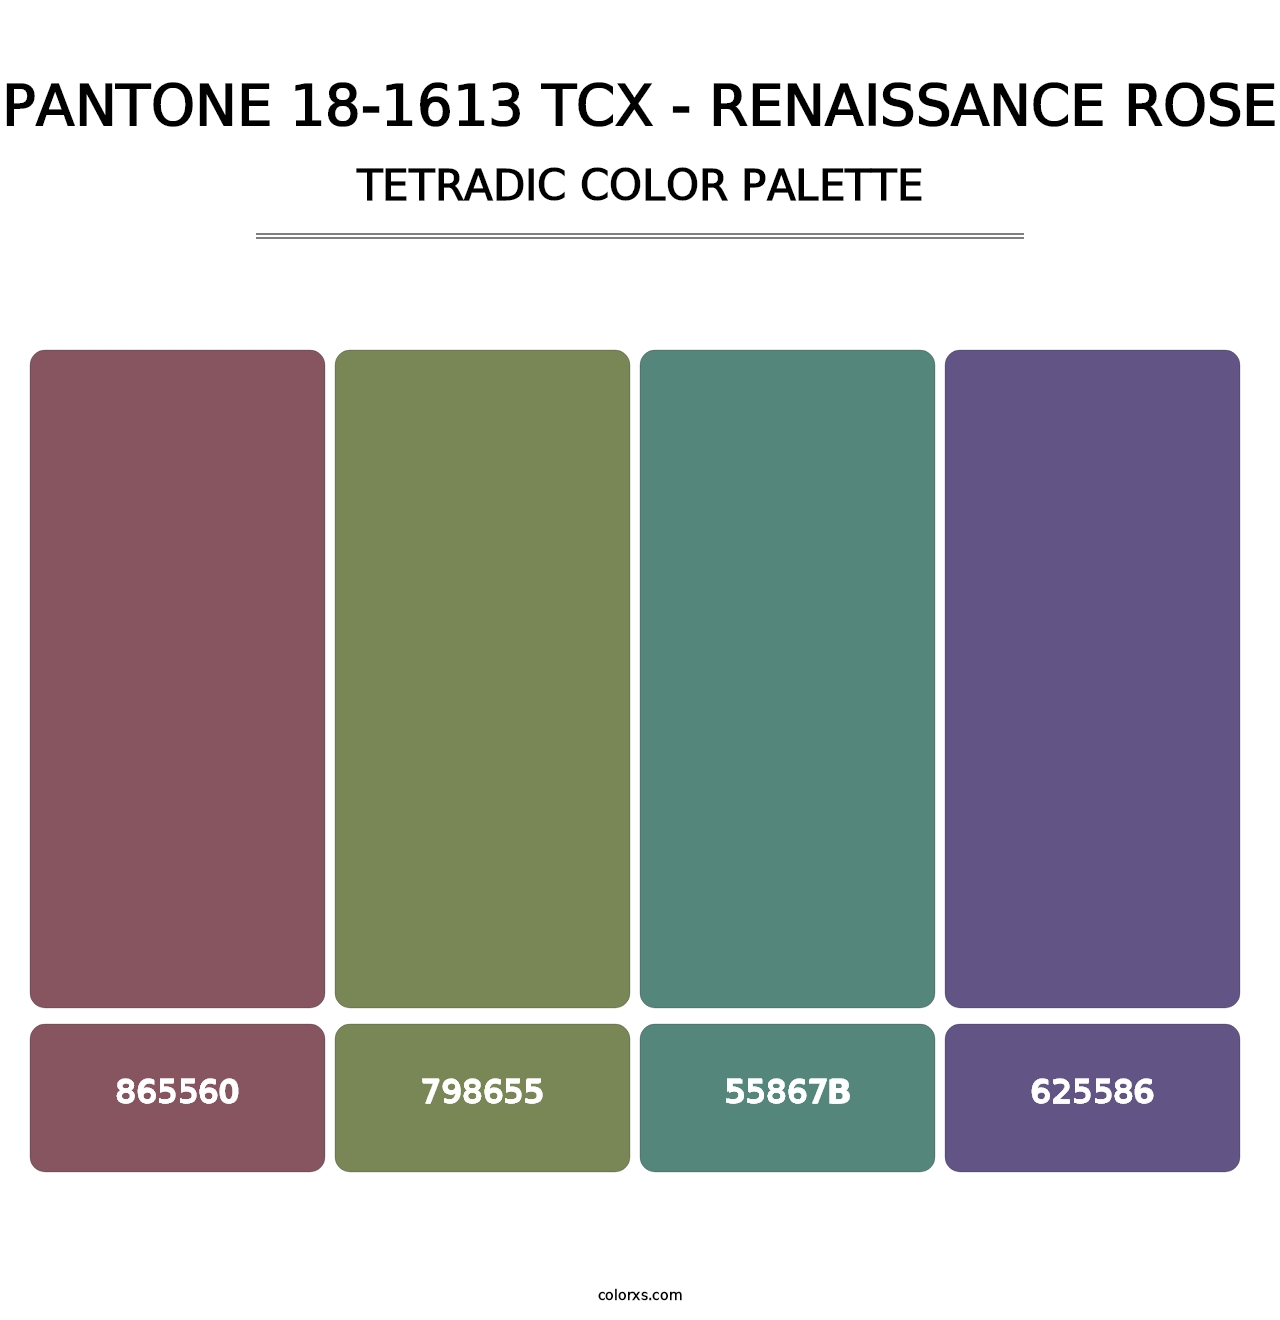 PANTONE 18-1613 TCX - Renaissance Rose - Tetradic Color Palette